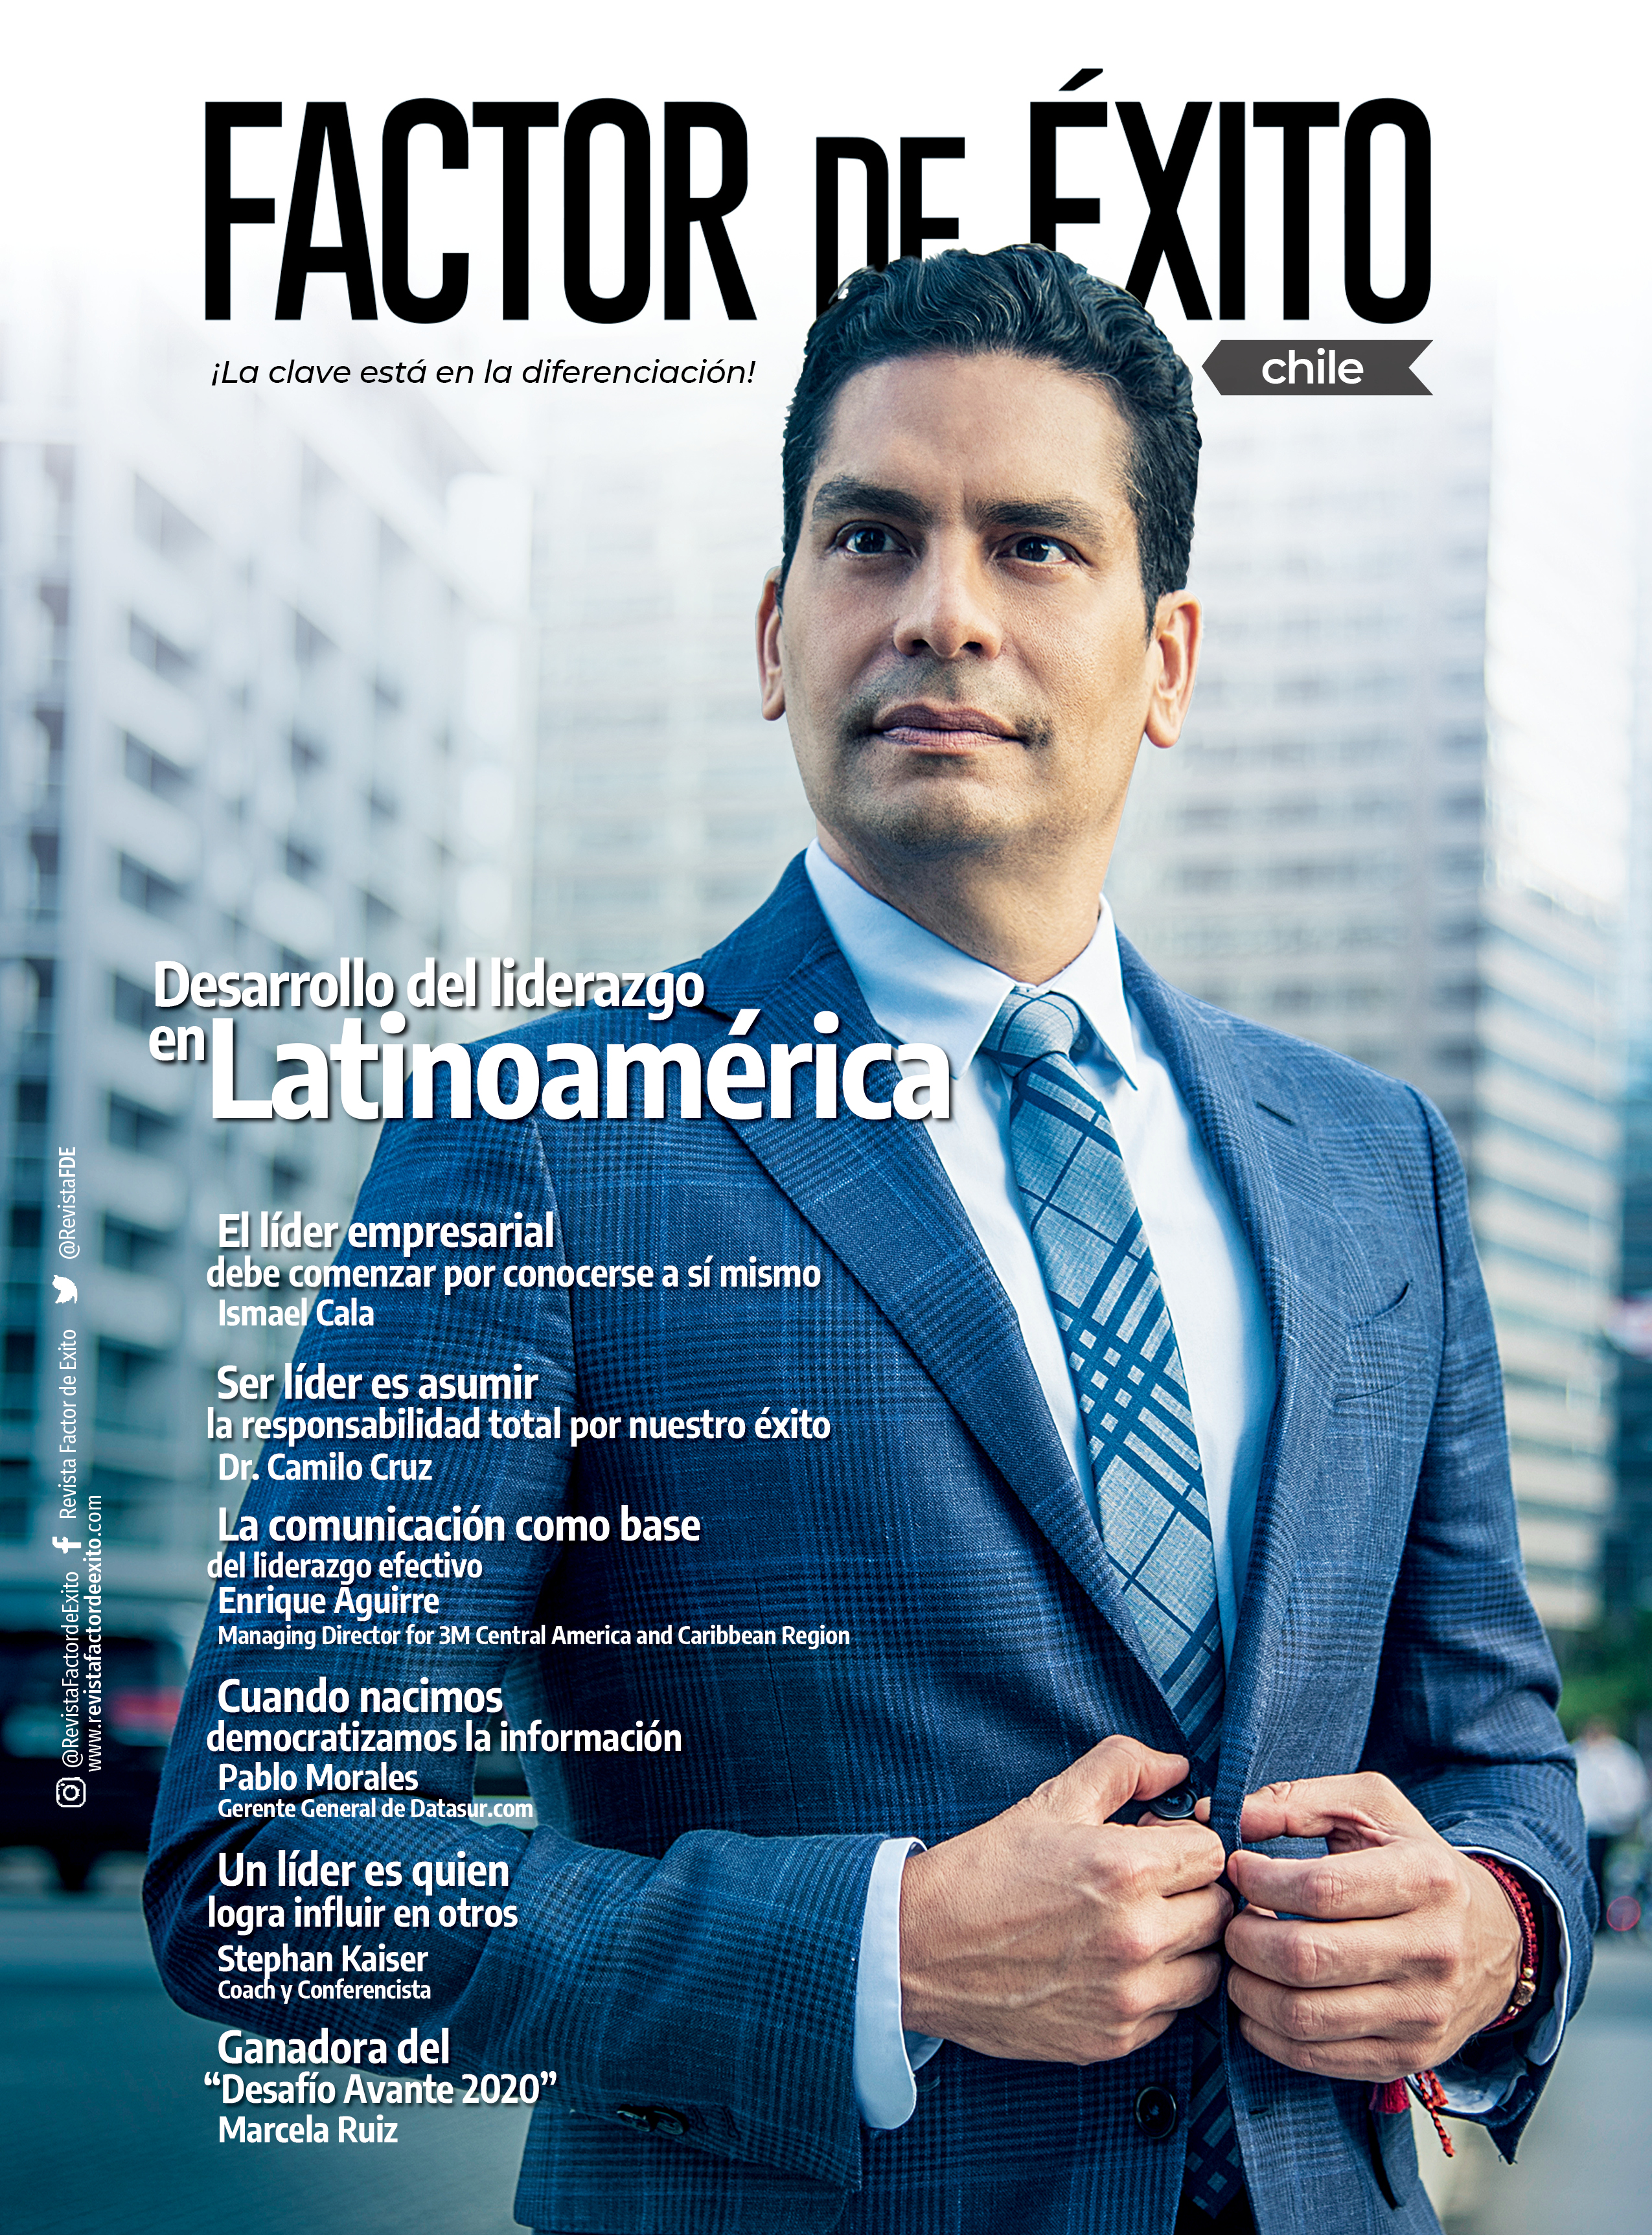 CHILE edición #1 Revista Factor de Éxito